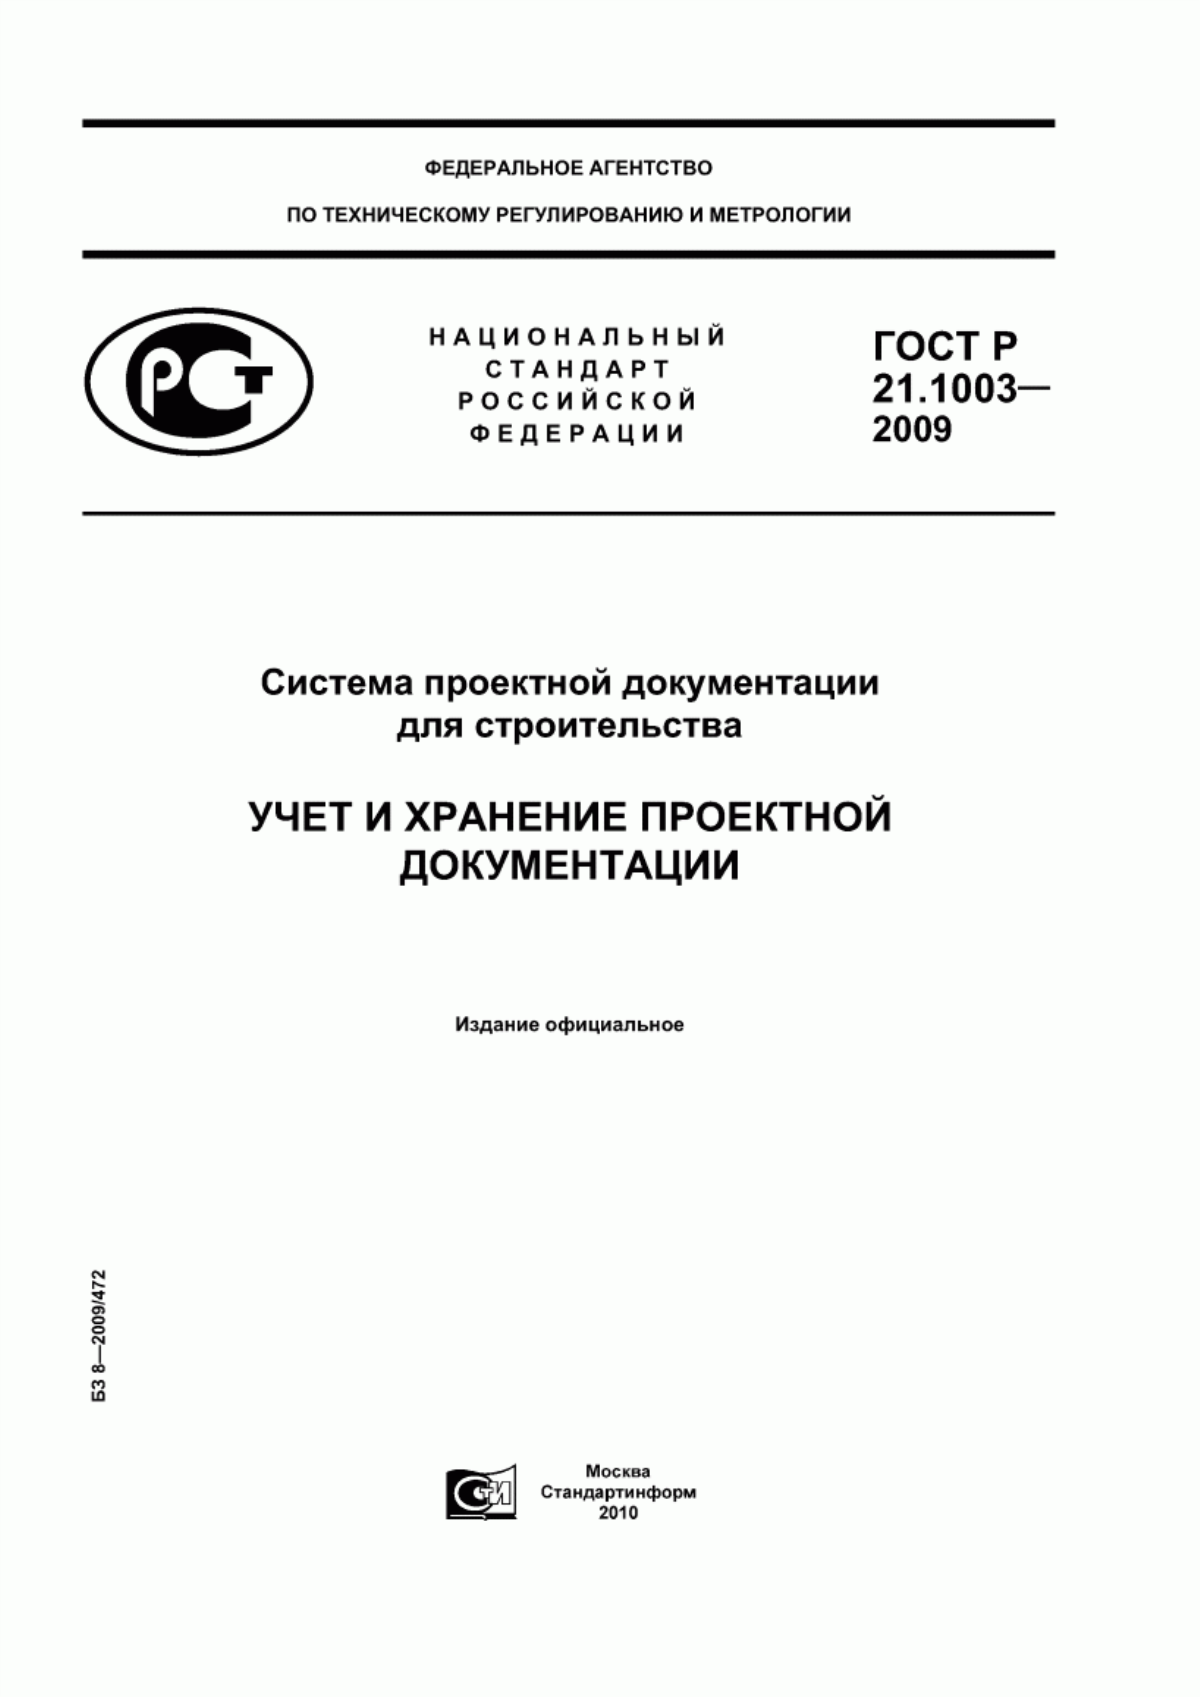 ГОСТ Р 21.1003-2009 Система проектной документации для строительства. Учет и хранение проектной документации